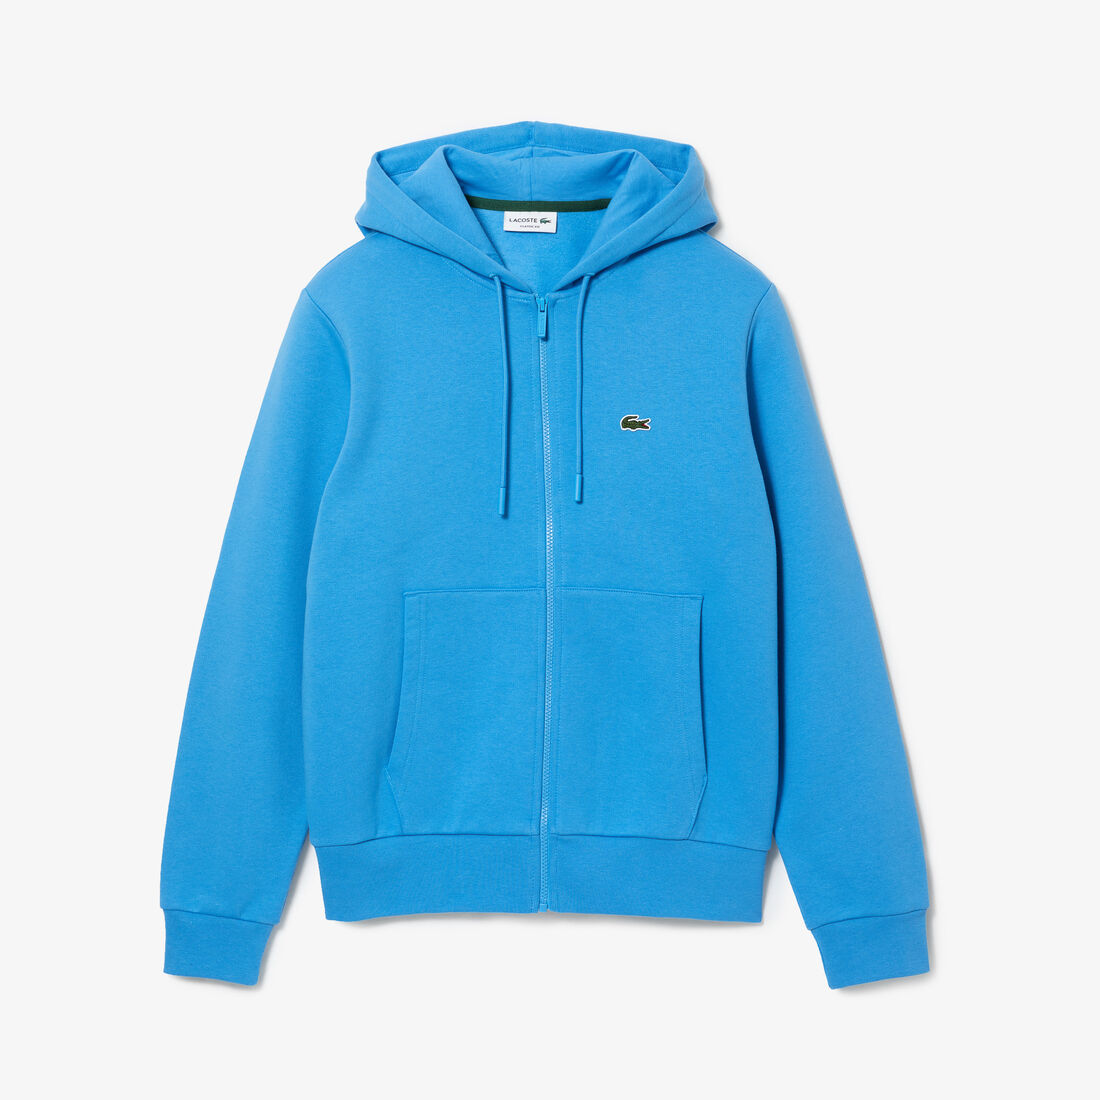 Lacoste Kangaroo Pocket Fleece Sweatshirts Herren Blau | NQRE-43196